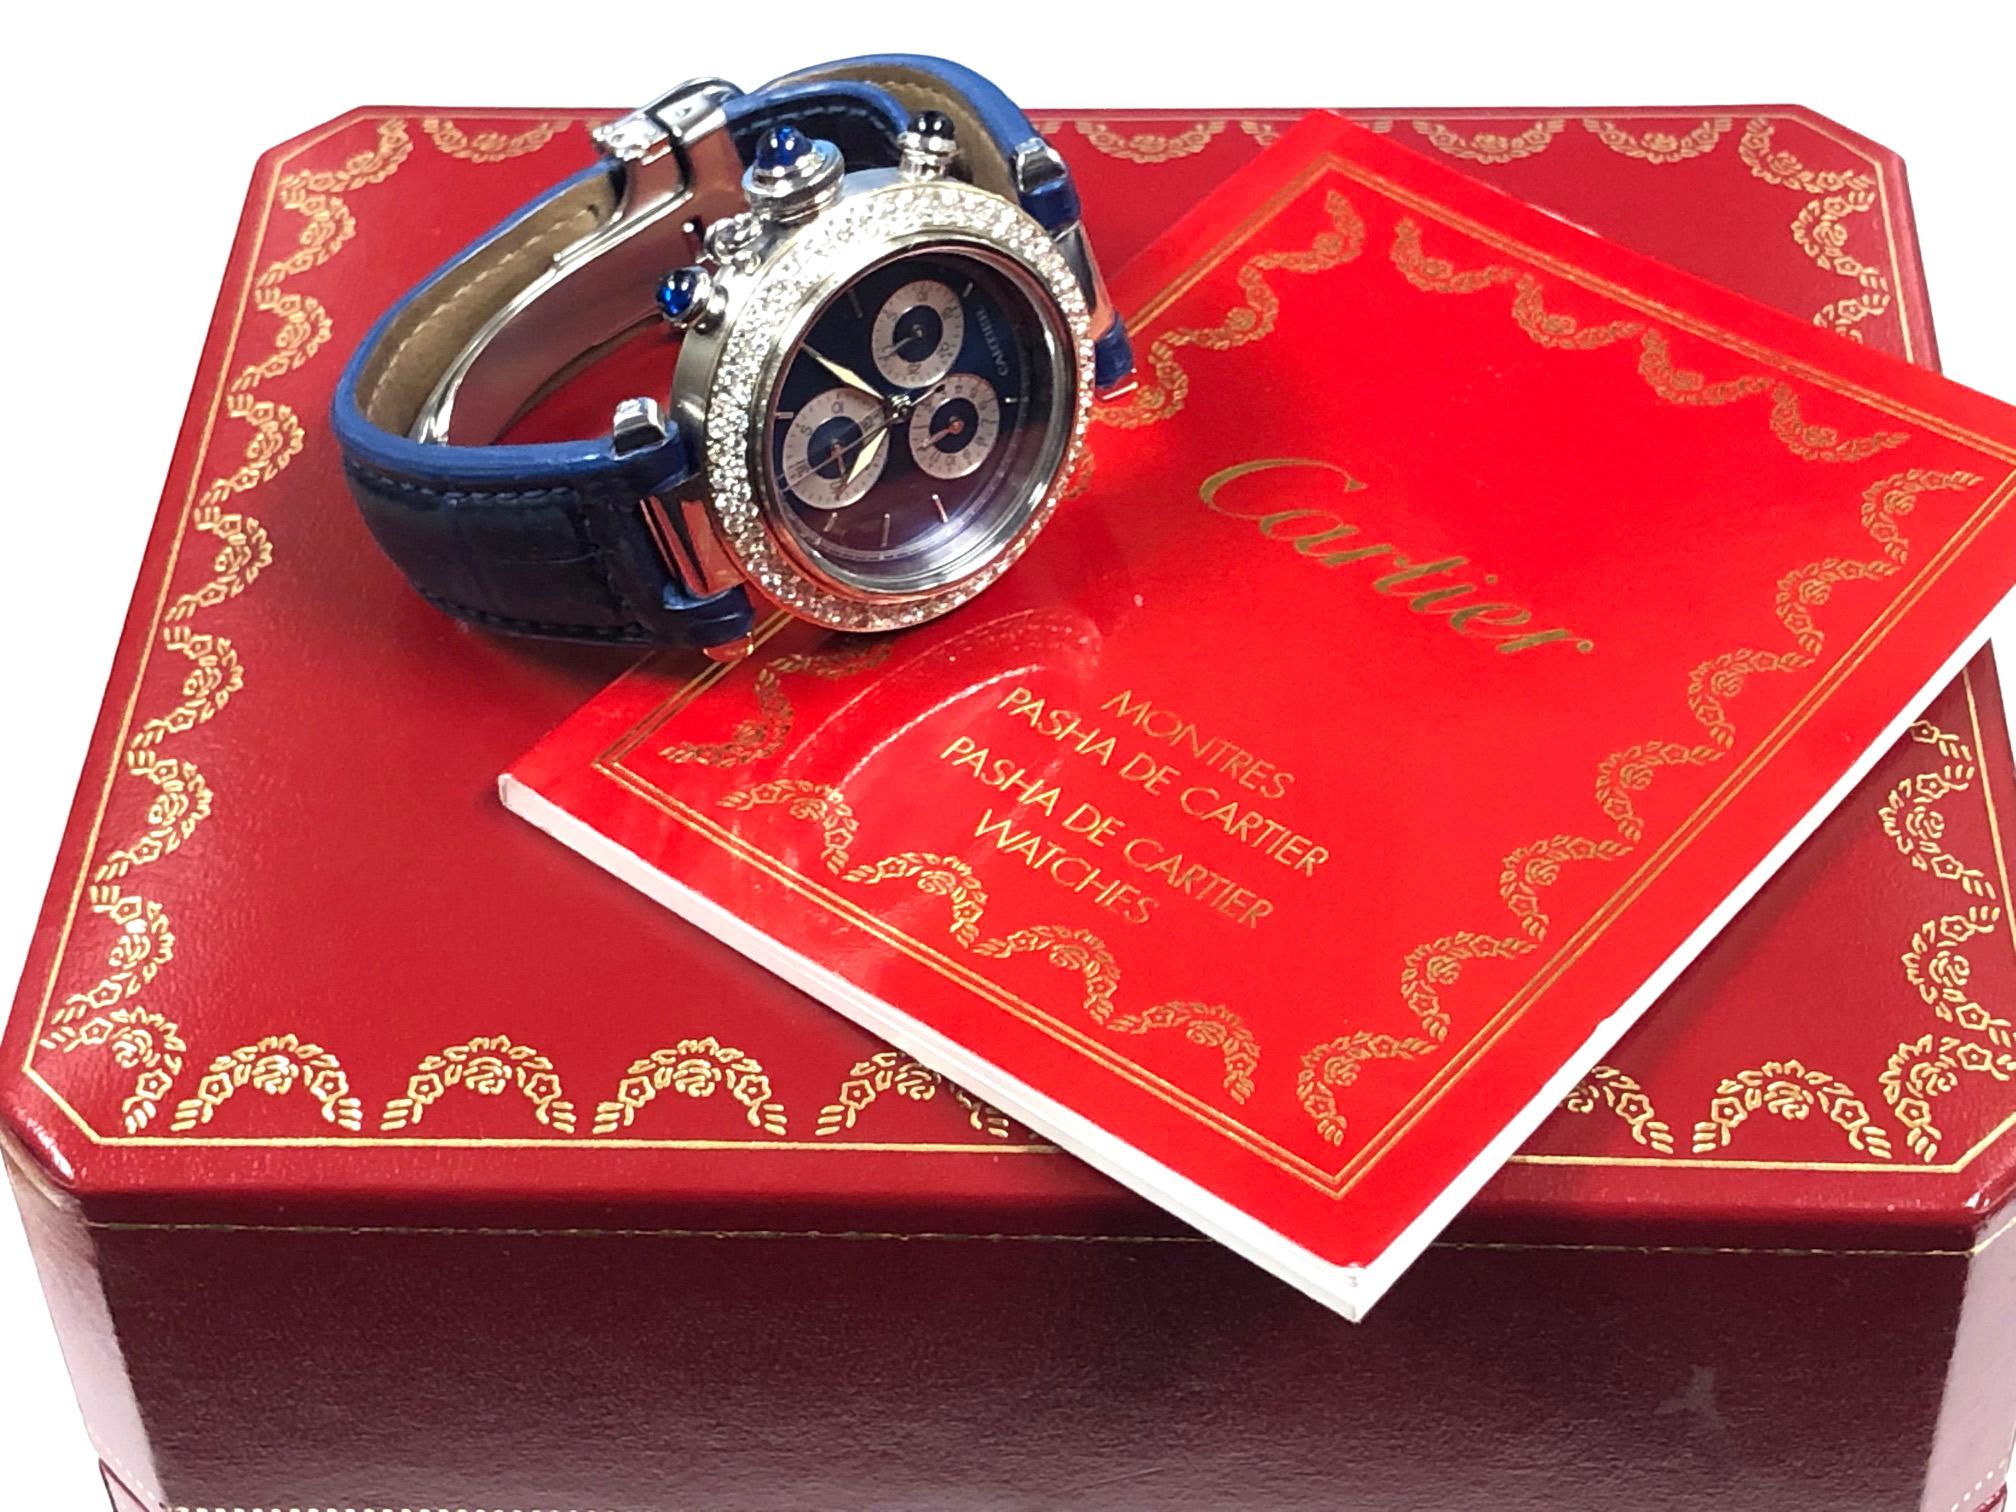 Cartier Pasha de Cartier Steel and Diamond Set Quartz Chronograph Wrist Watch 1